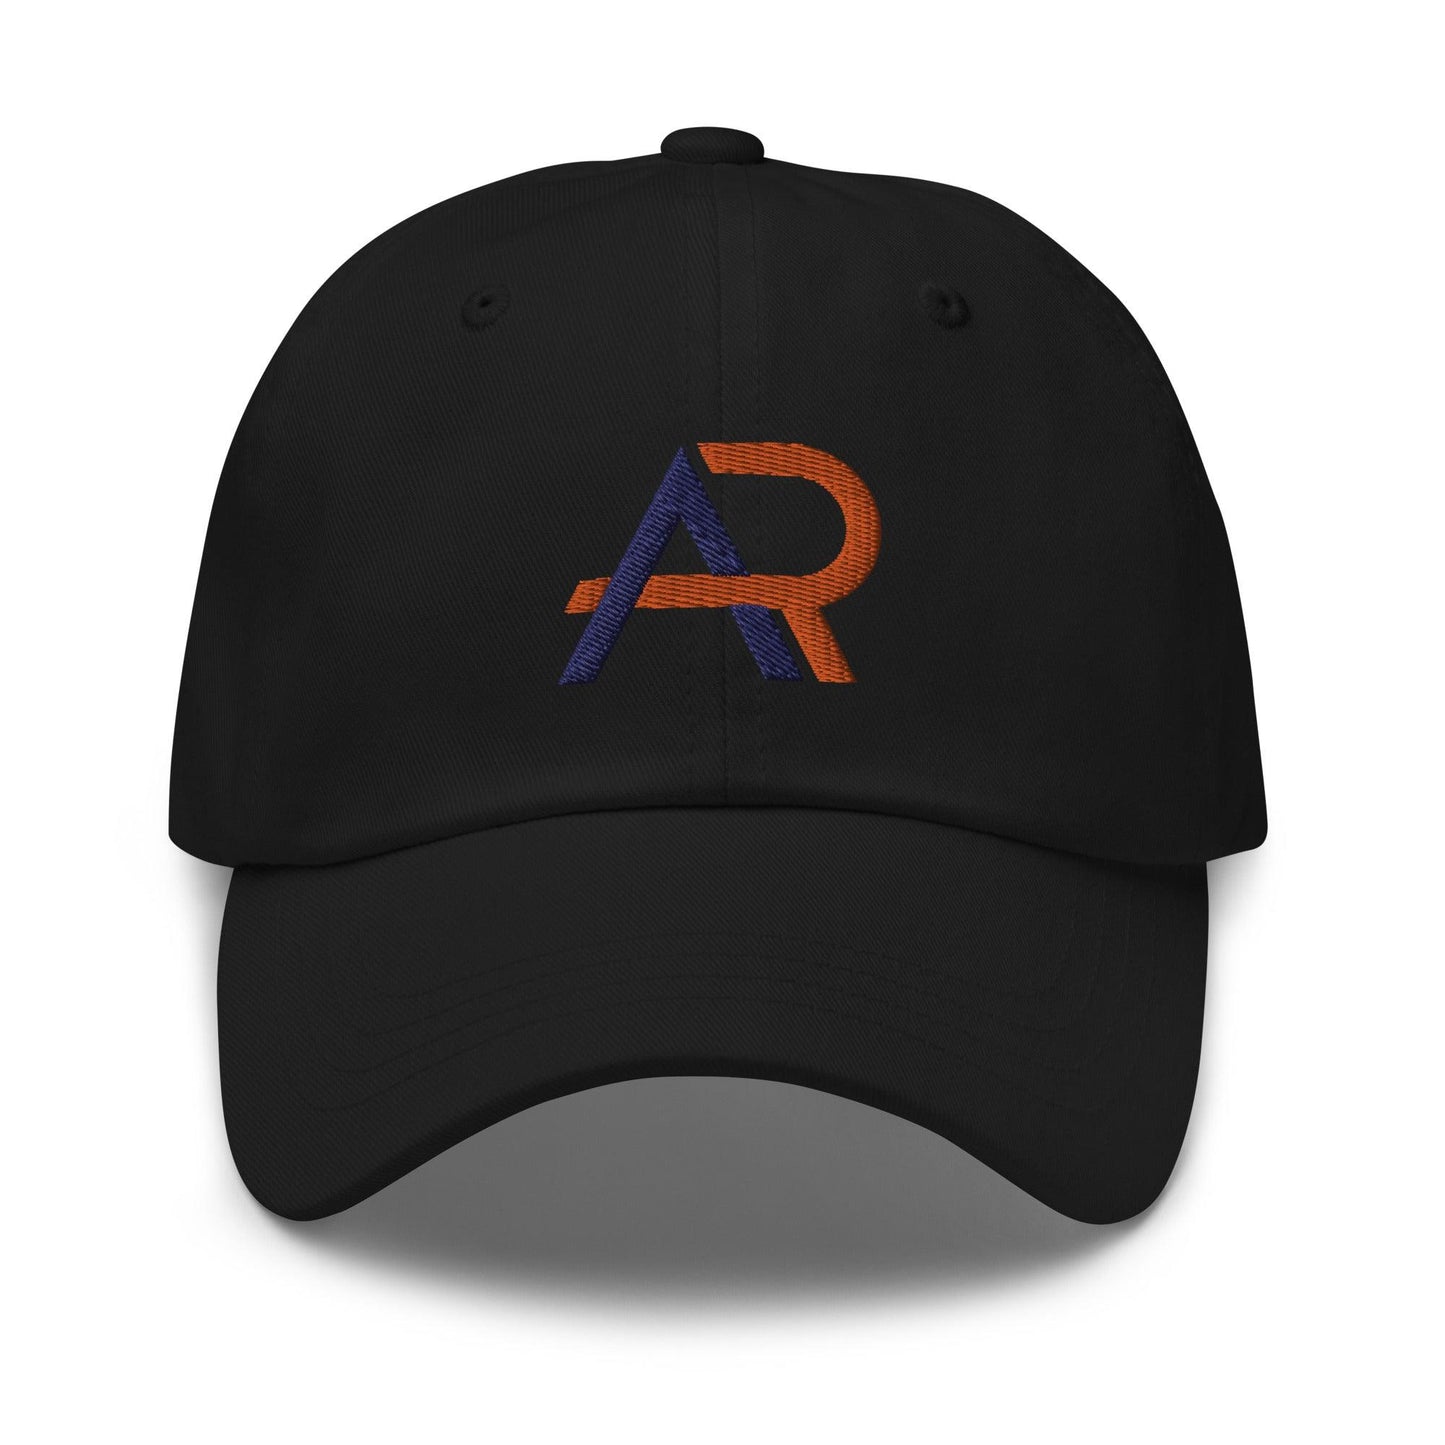 Alex Rao "Elite" hat - Fan Arch